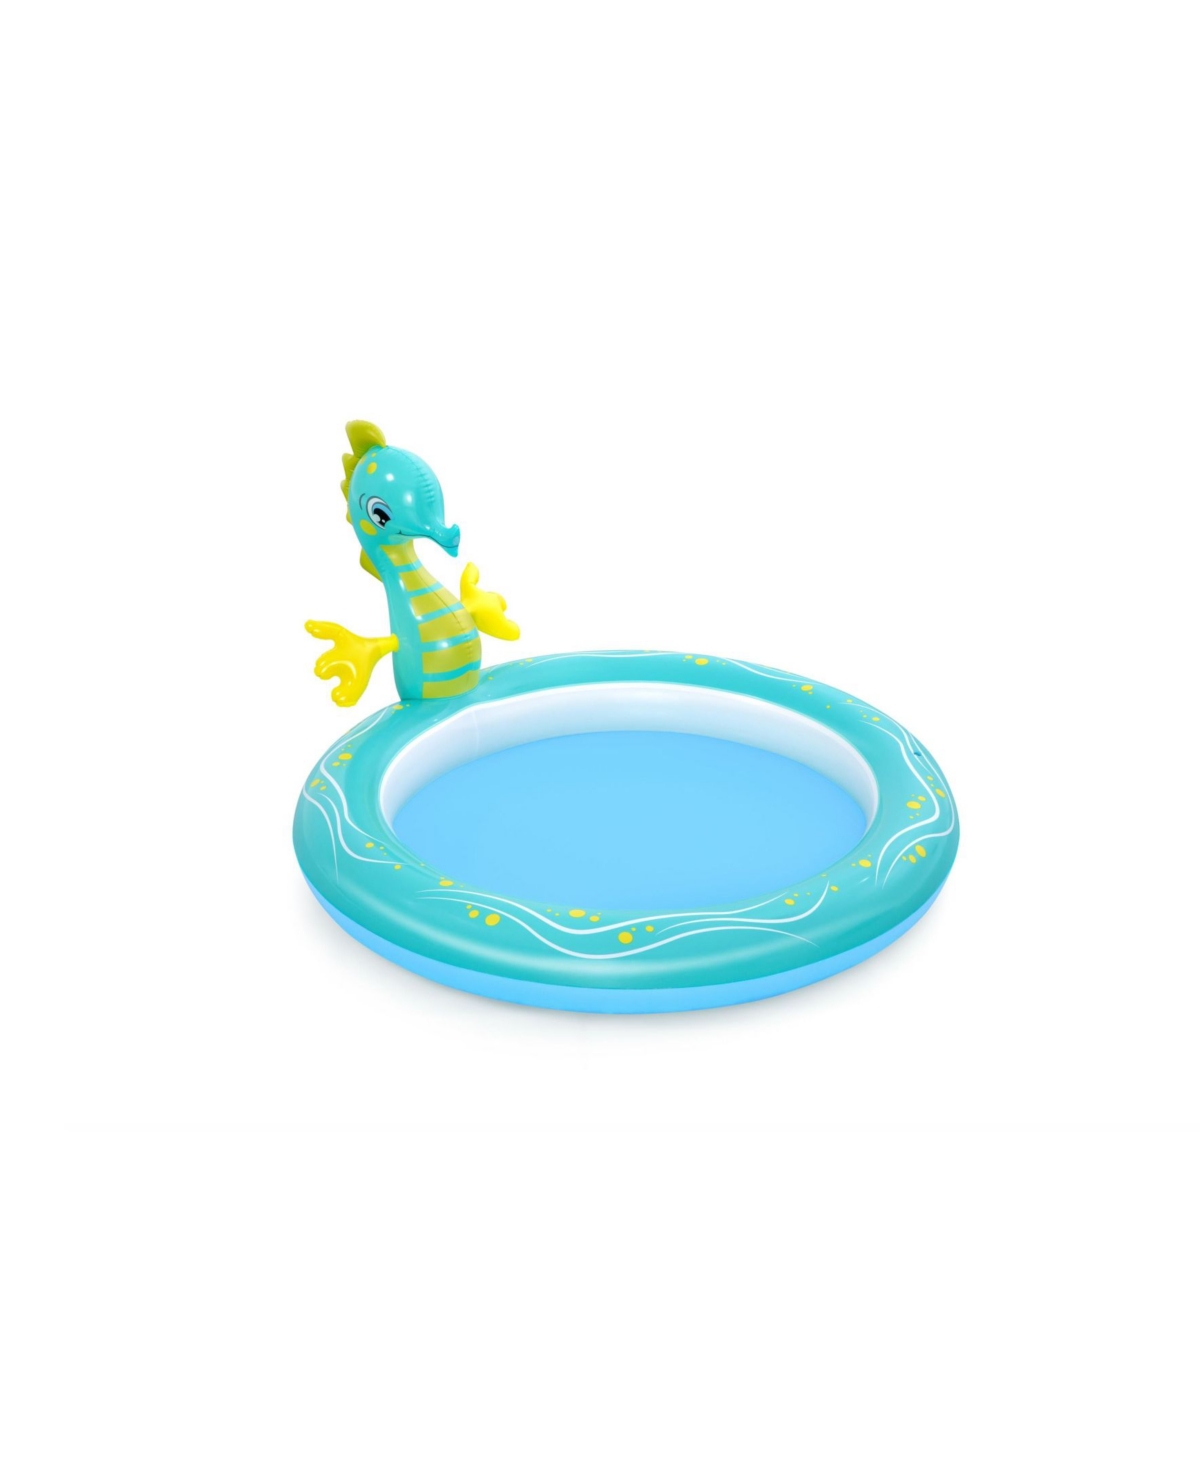 Bestway H2OGO! Seahorse Inflatable Sprinkler Pool - Blue